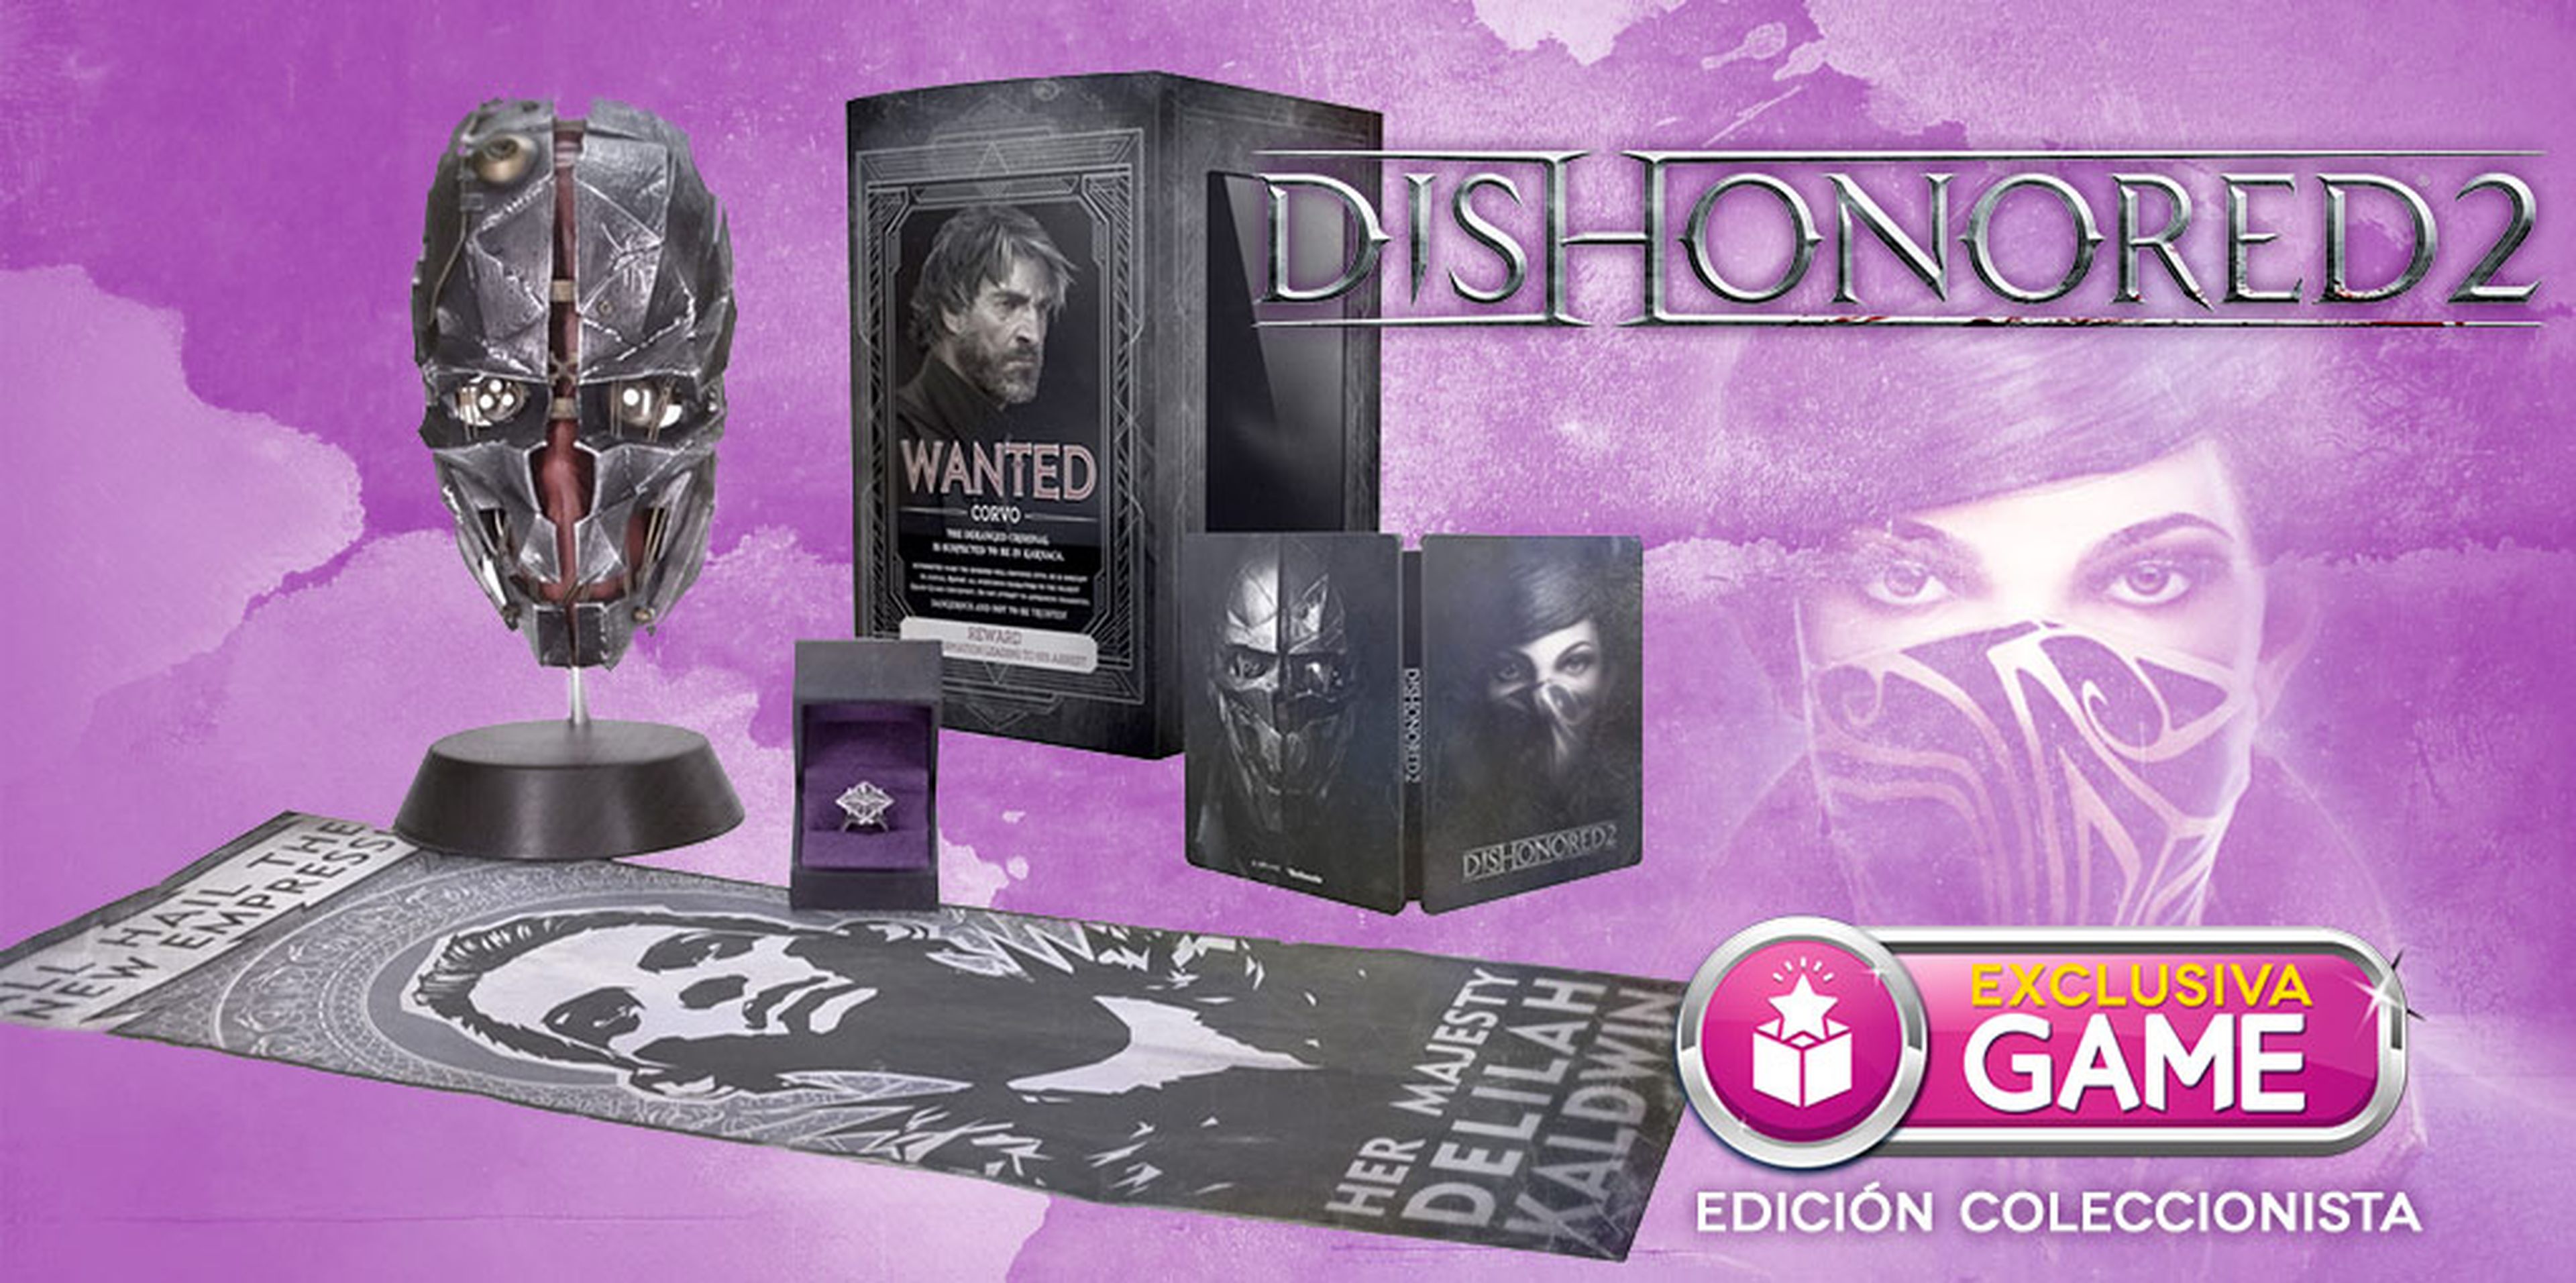 Edición Coleccionista de Dishonored 2 exclusiva de GAME